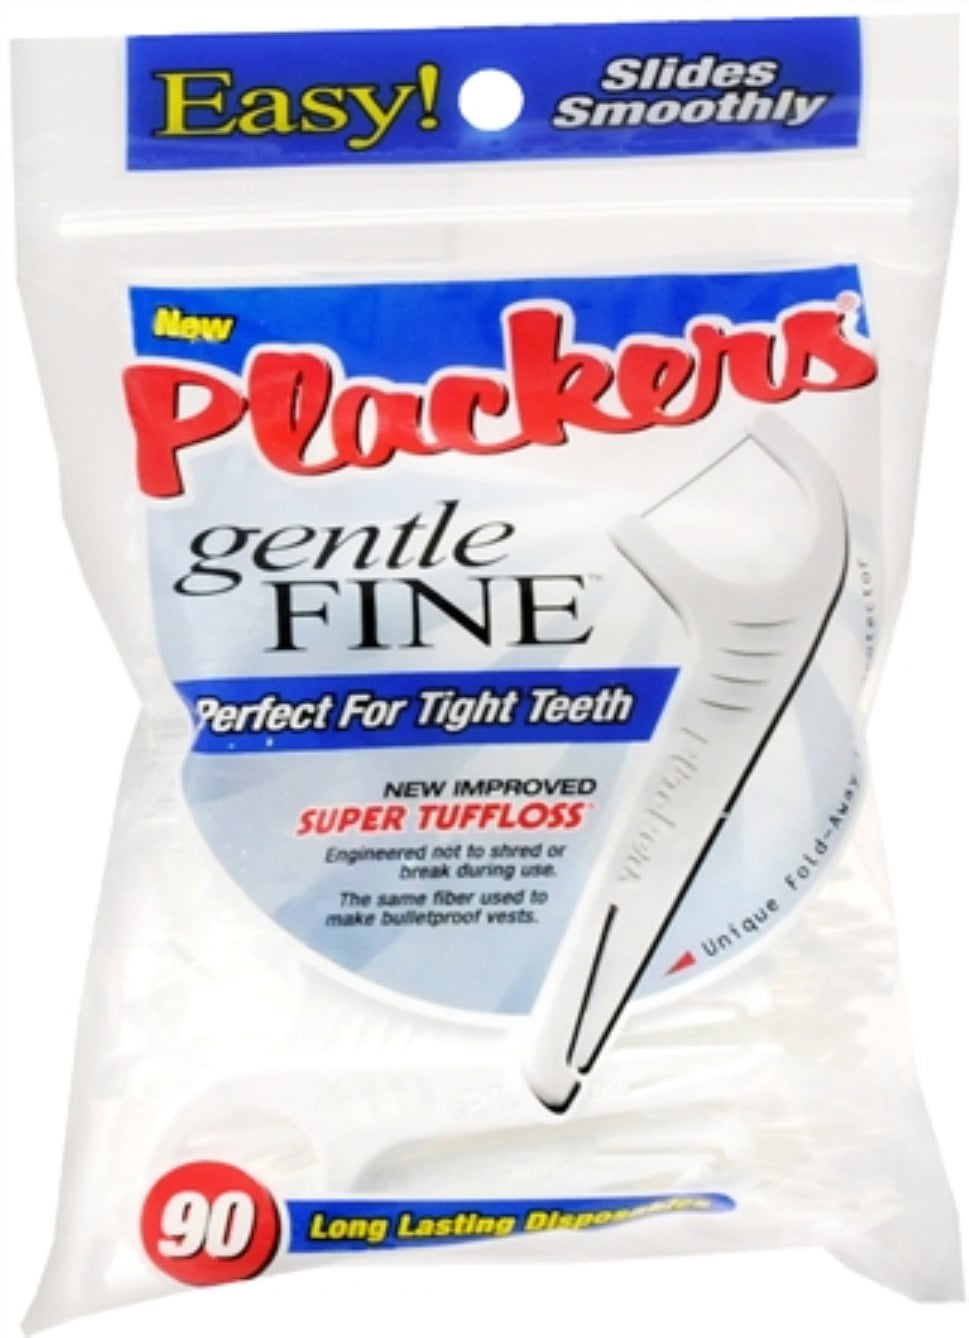 Plackers Dental Flossers Gentle Fine 90 Each